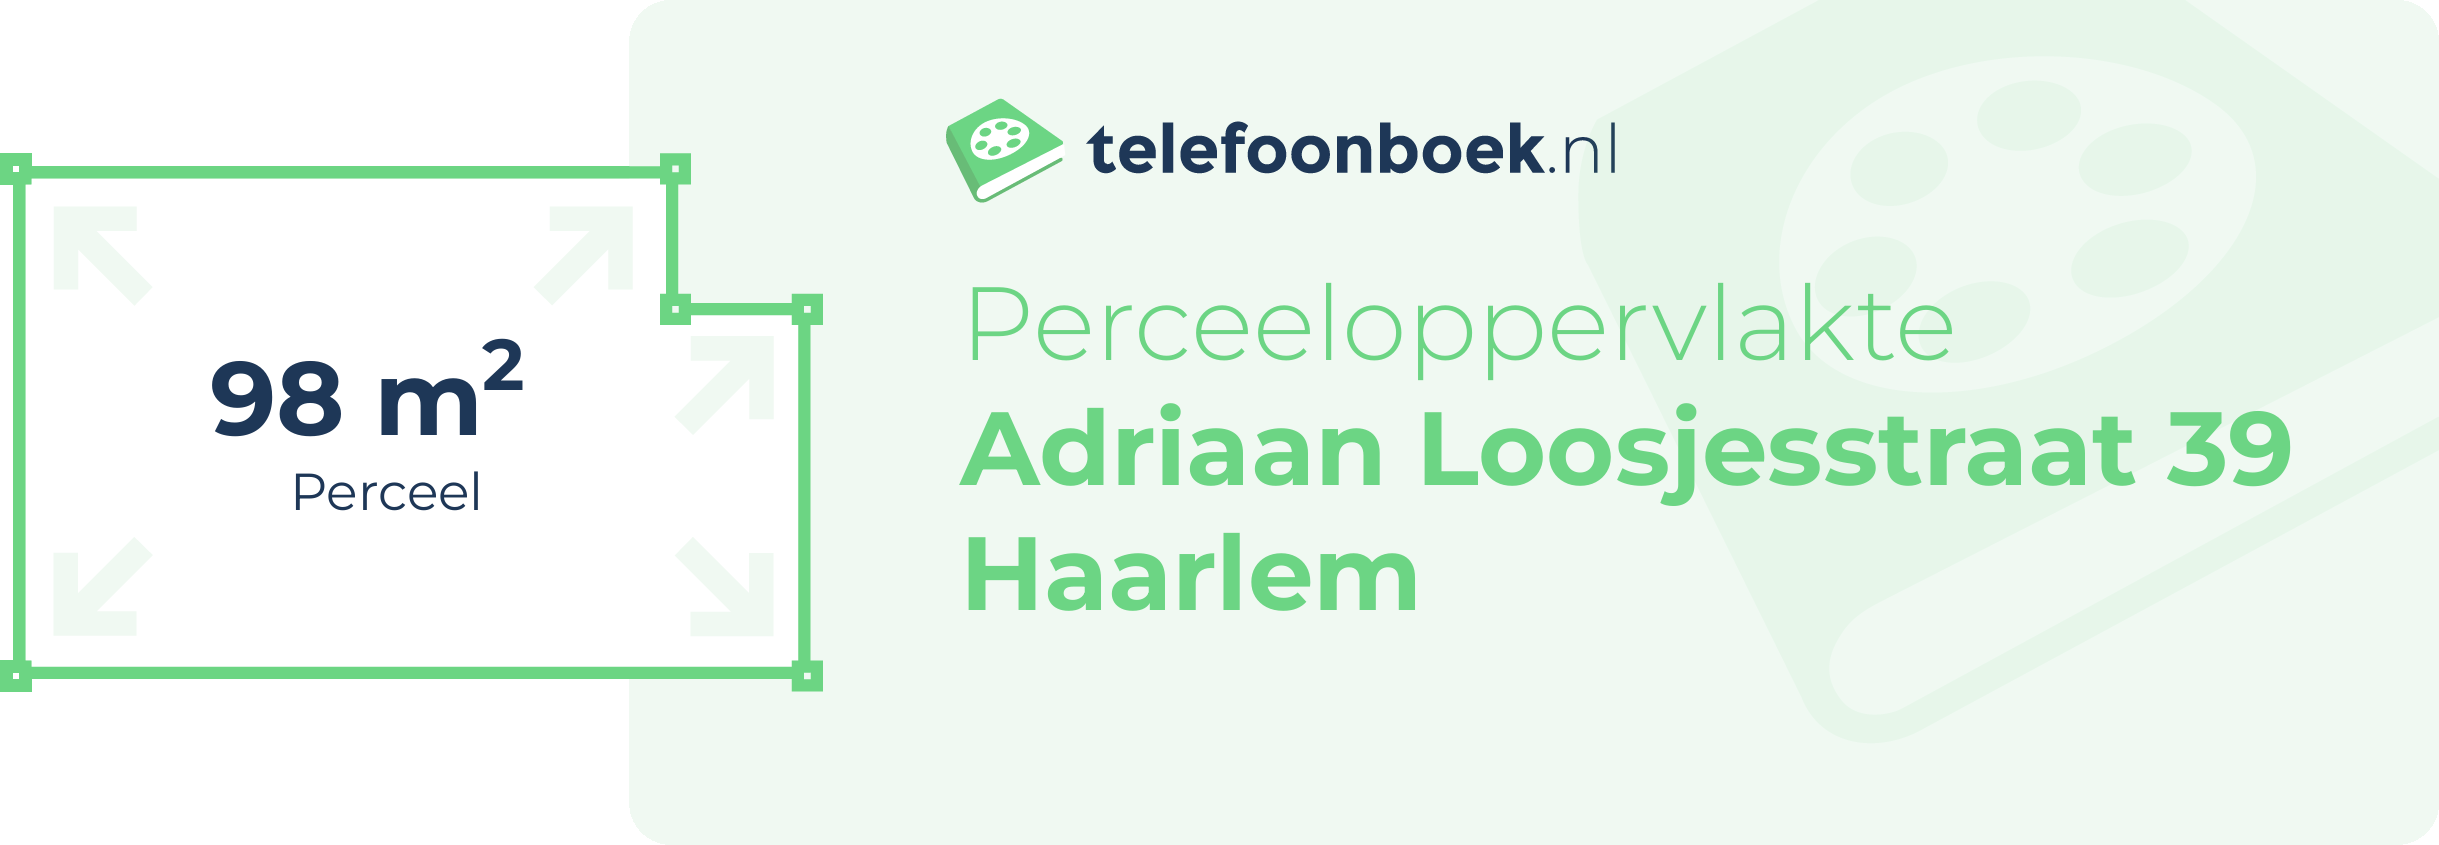 Perceeloppervlakte Adriaan Loosjesstraat 39 Haarlem